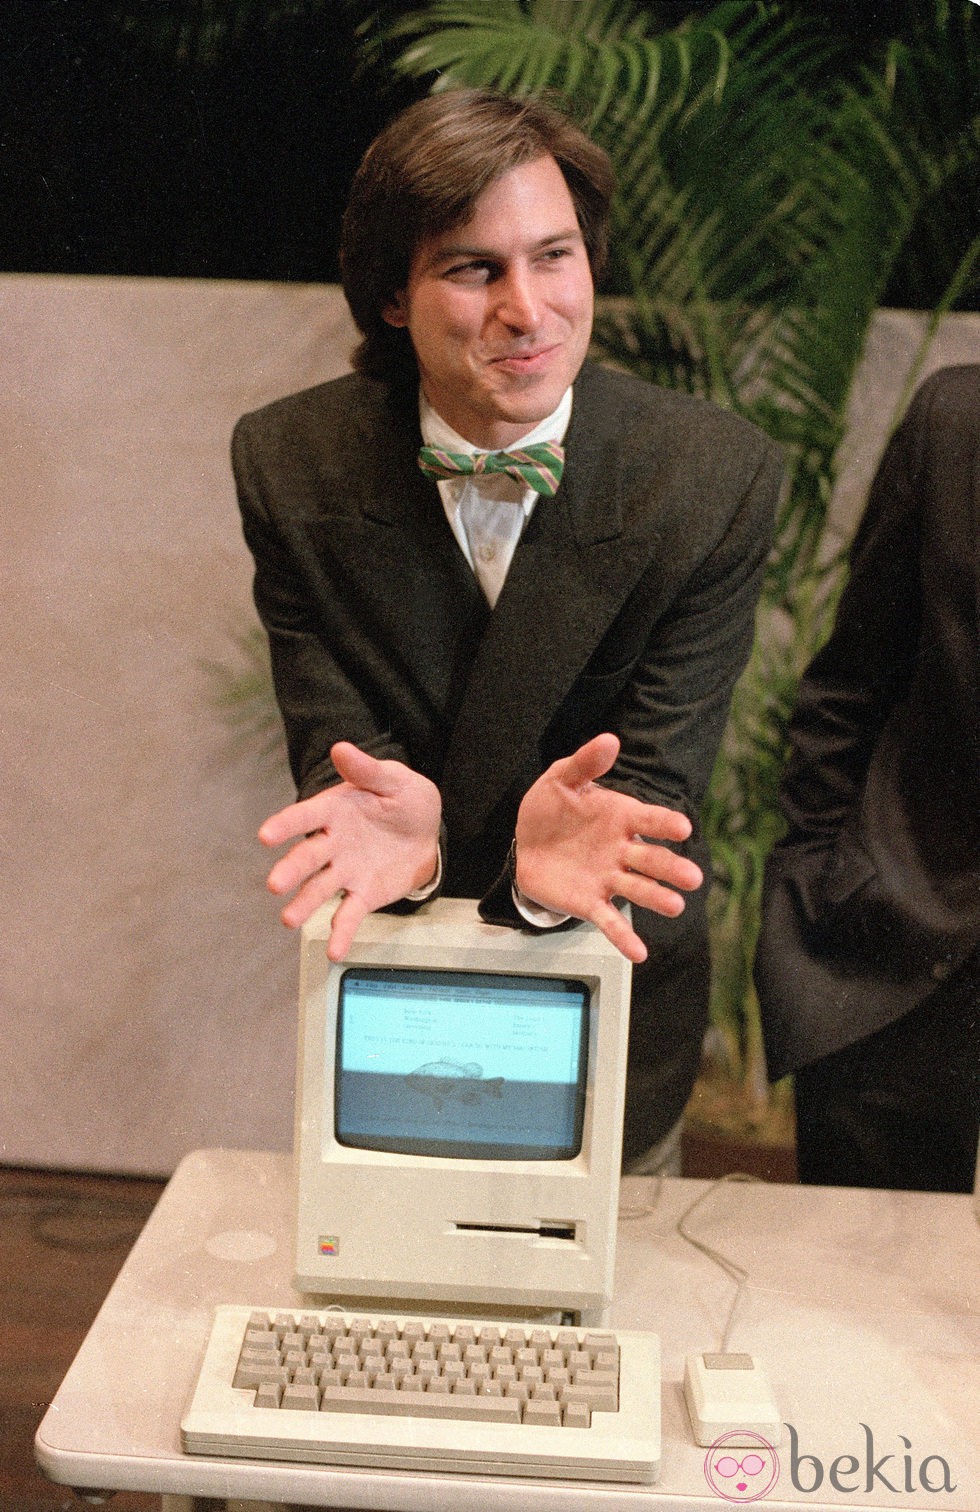 Steve Jobs con pajarita presenta uno de los primeros Macintosh